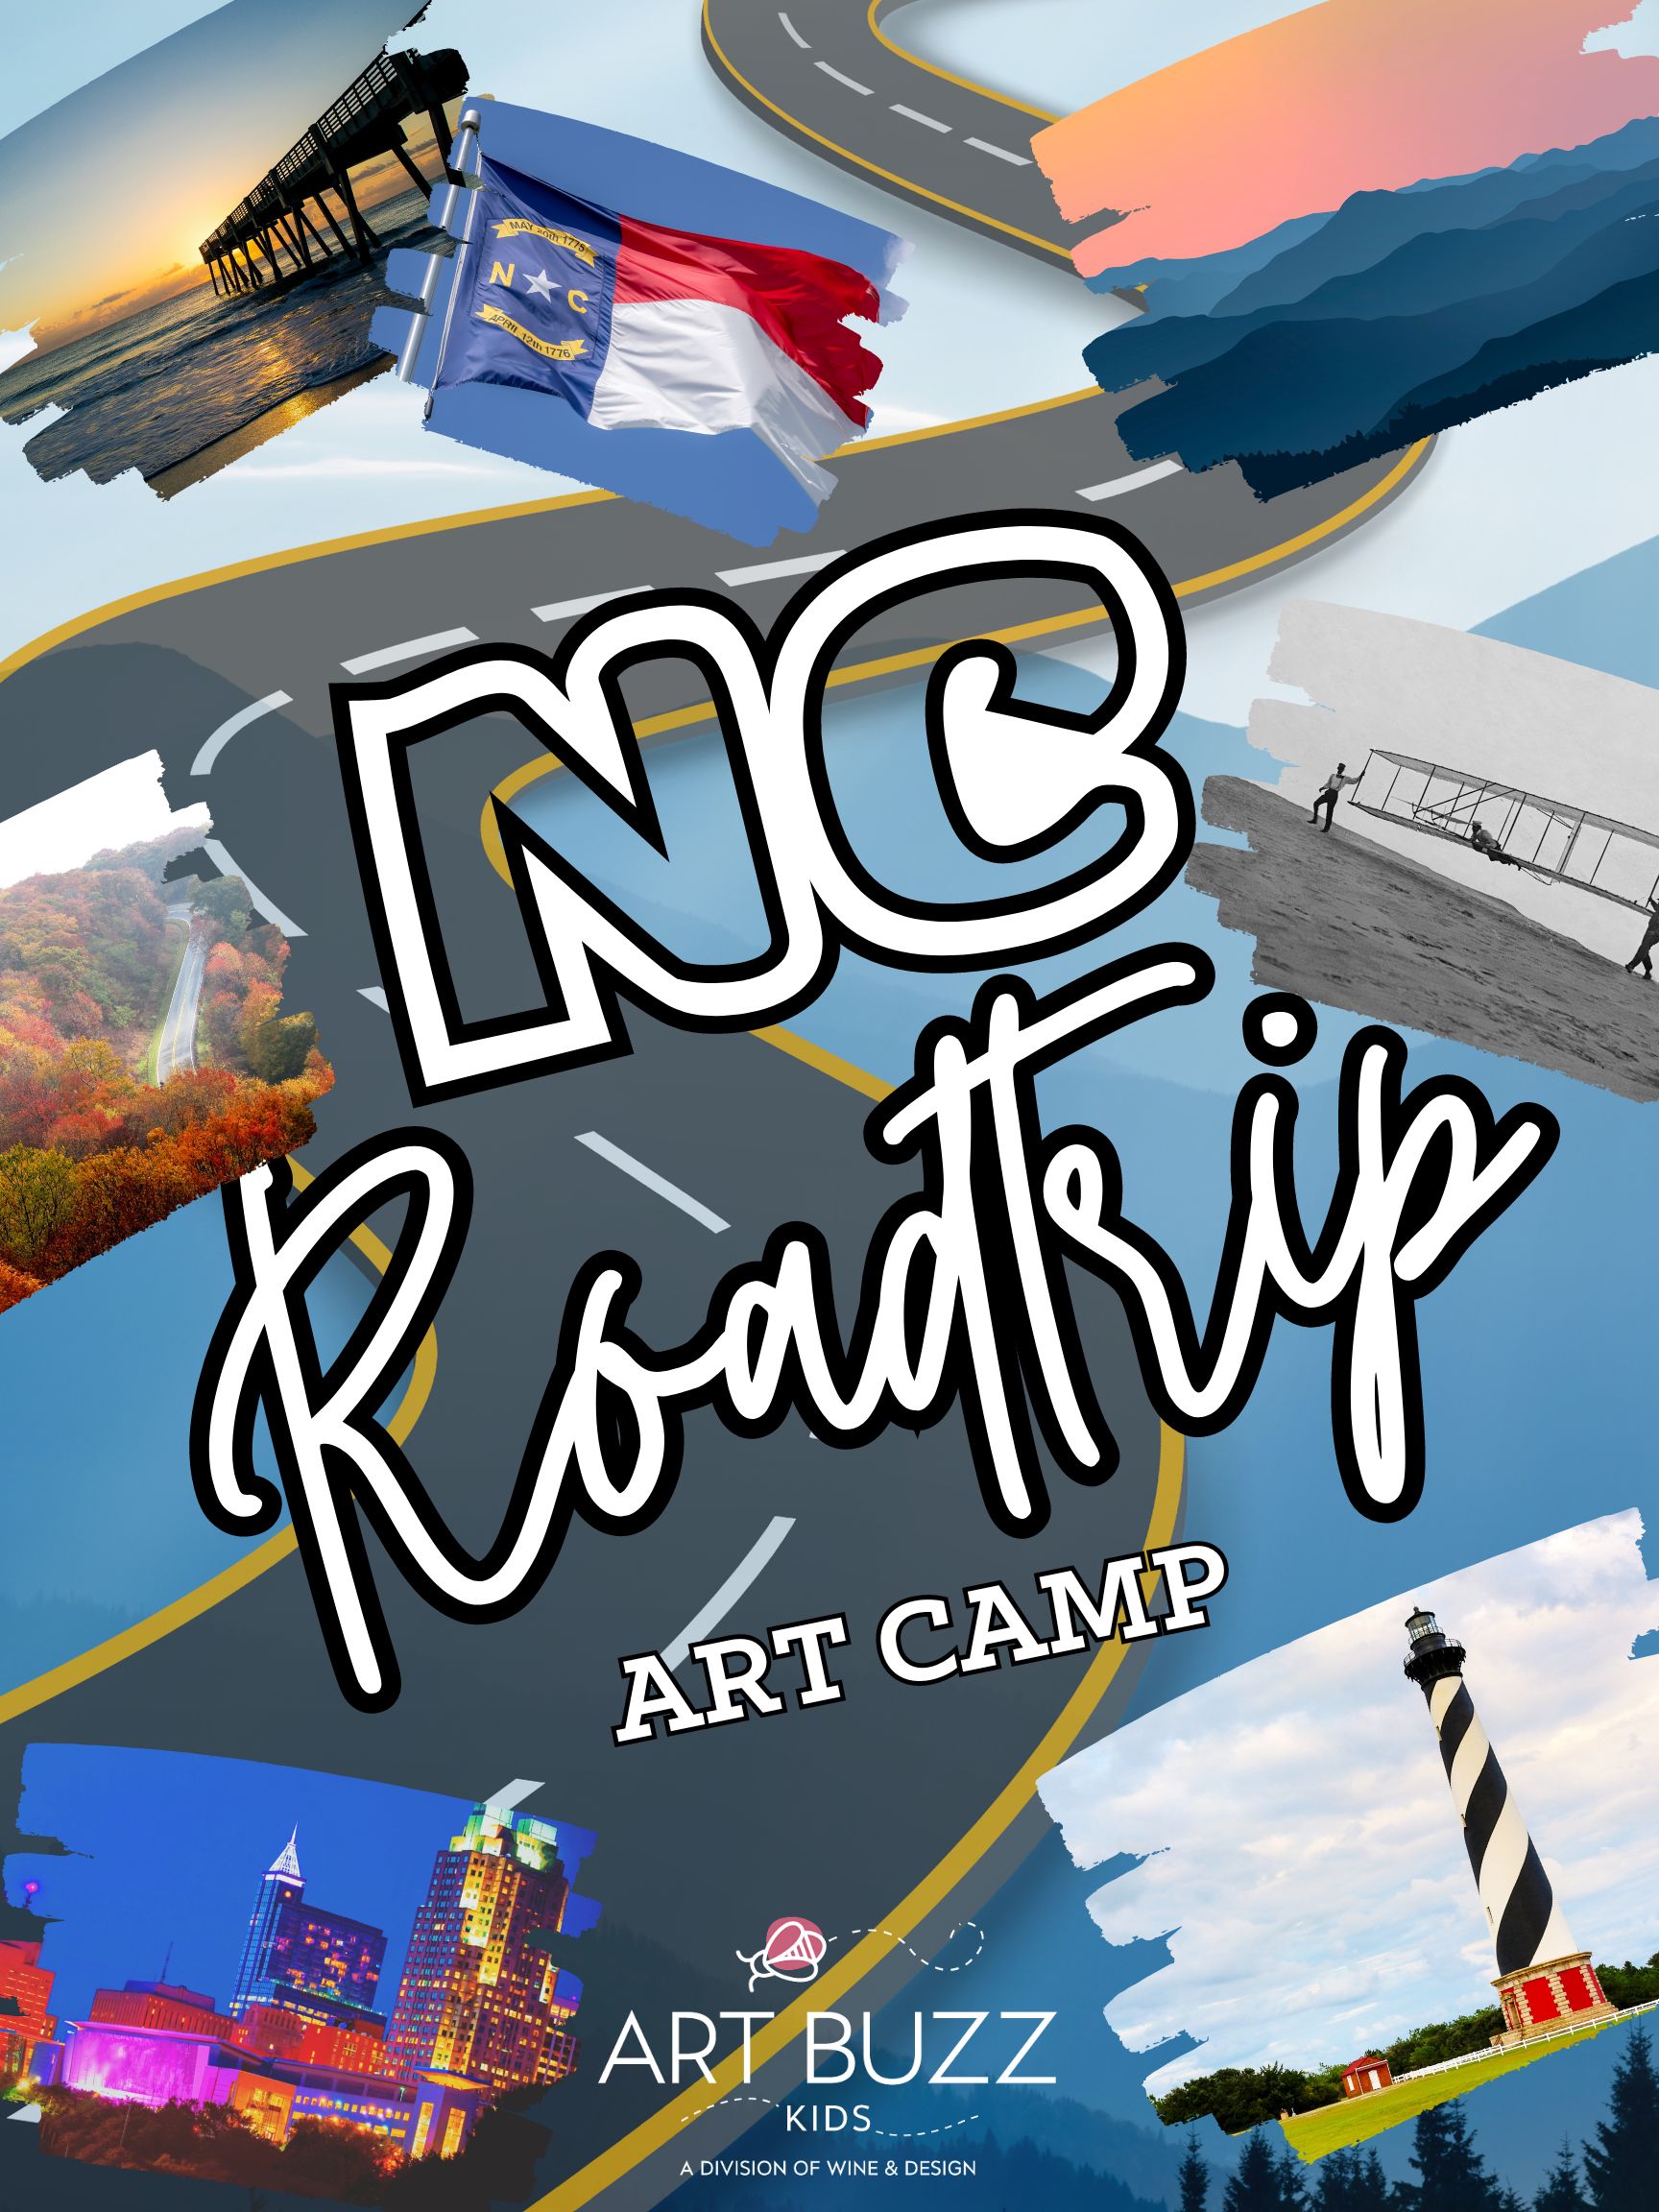 Art Buzz Kids | NEW! NC ROAD TRIP